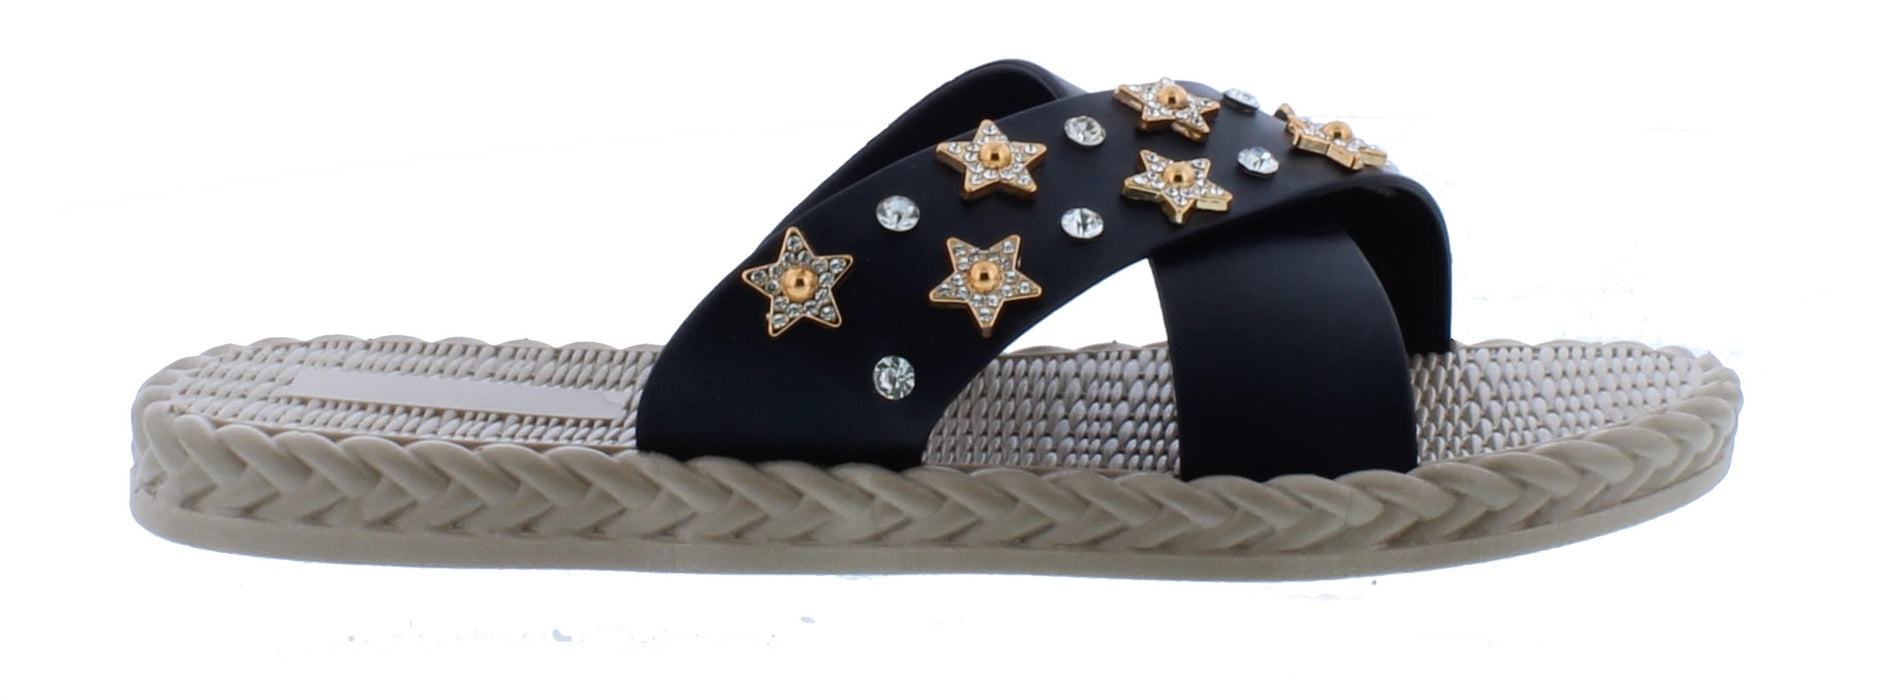 Women Crisscross Slip On Sandal with Stars